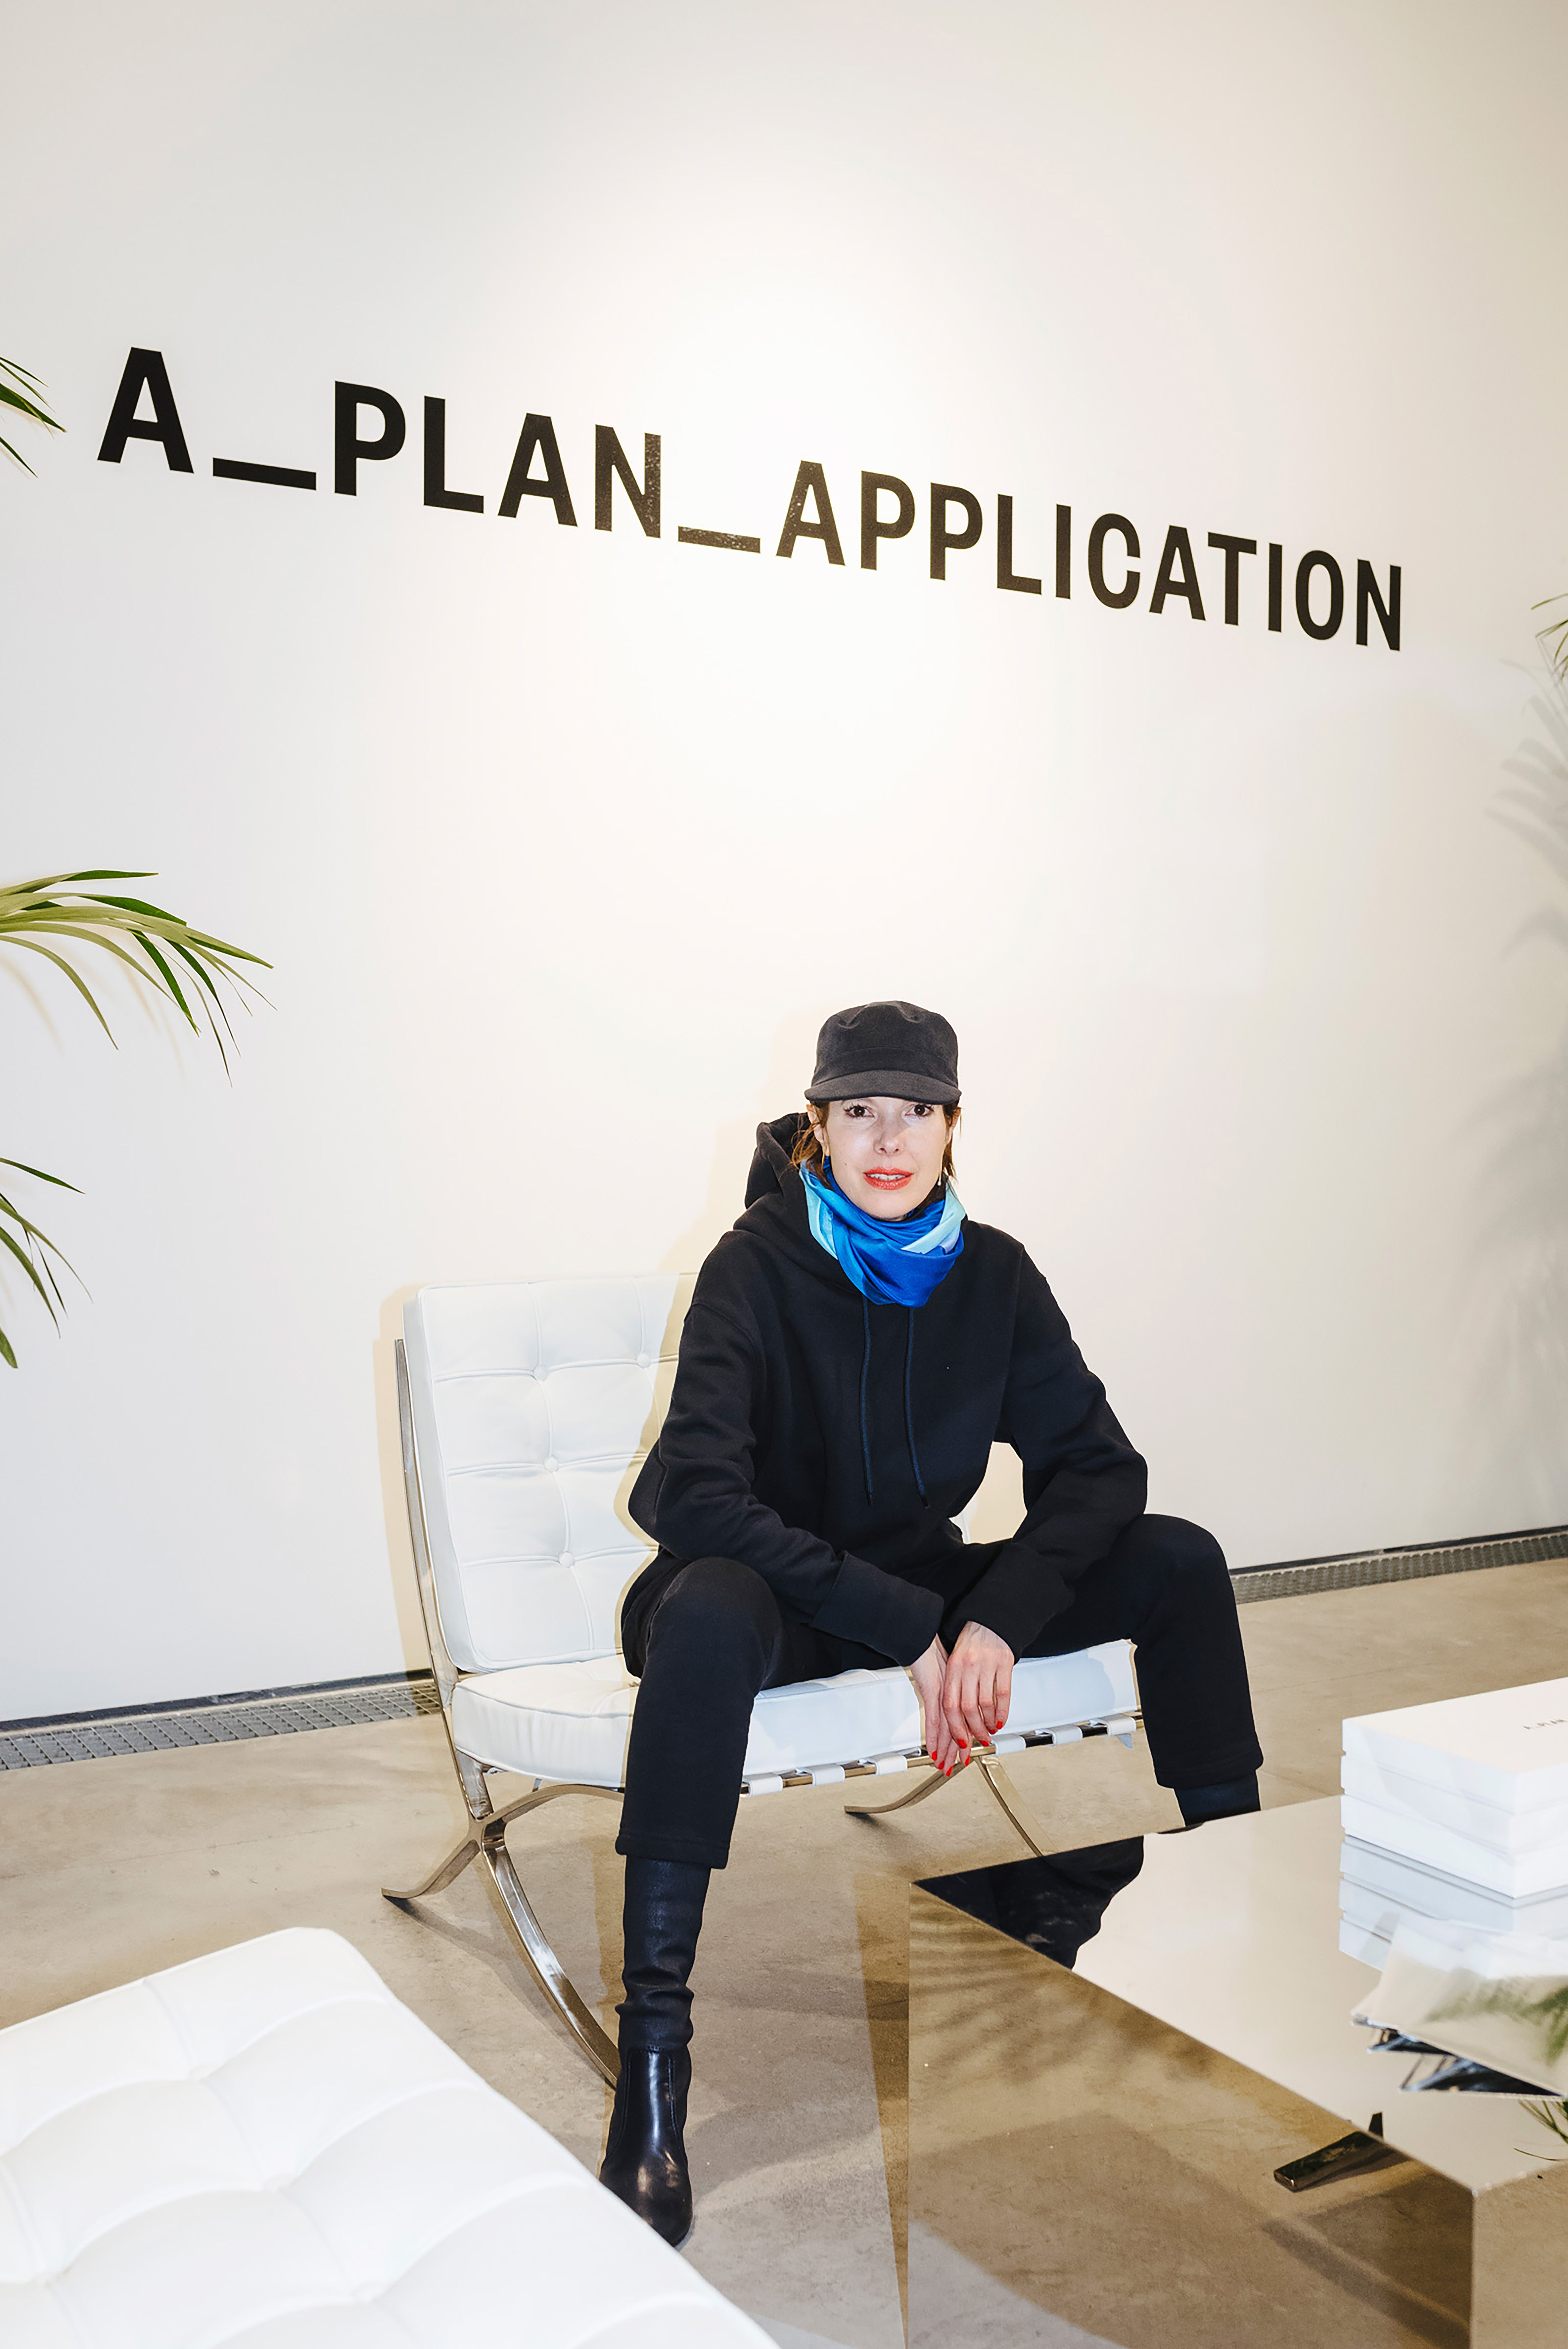 Anna Blessmann nello studio di A_Plan_Application durante la settimana della moda di Parigi. Per gentile concessione dello studio.